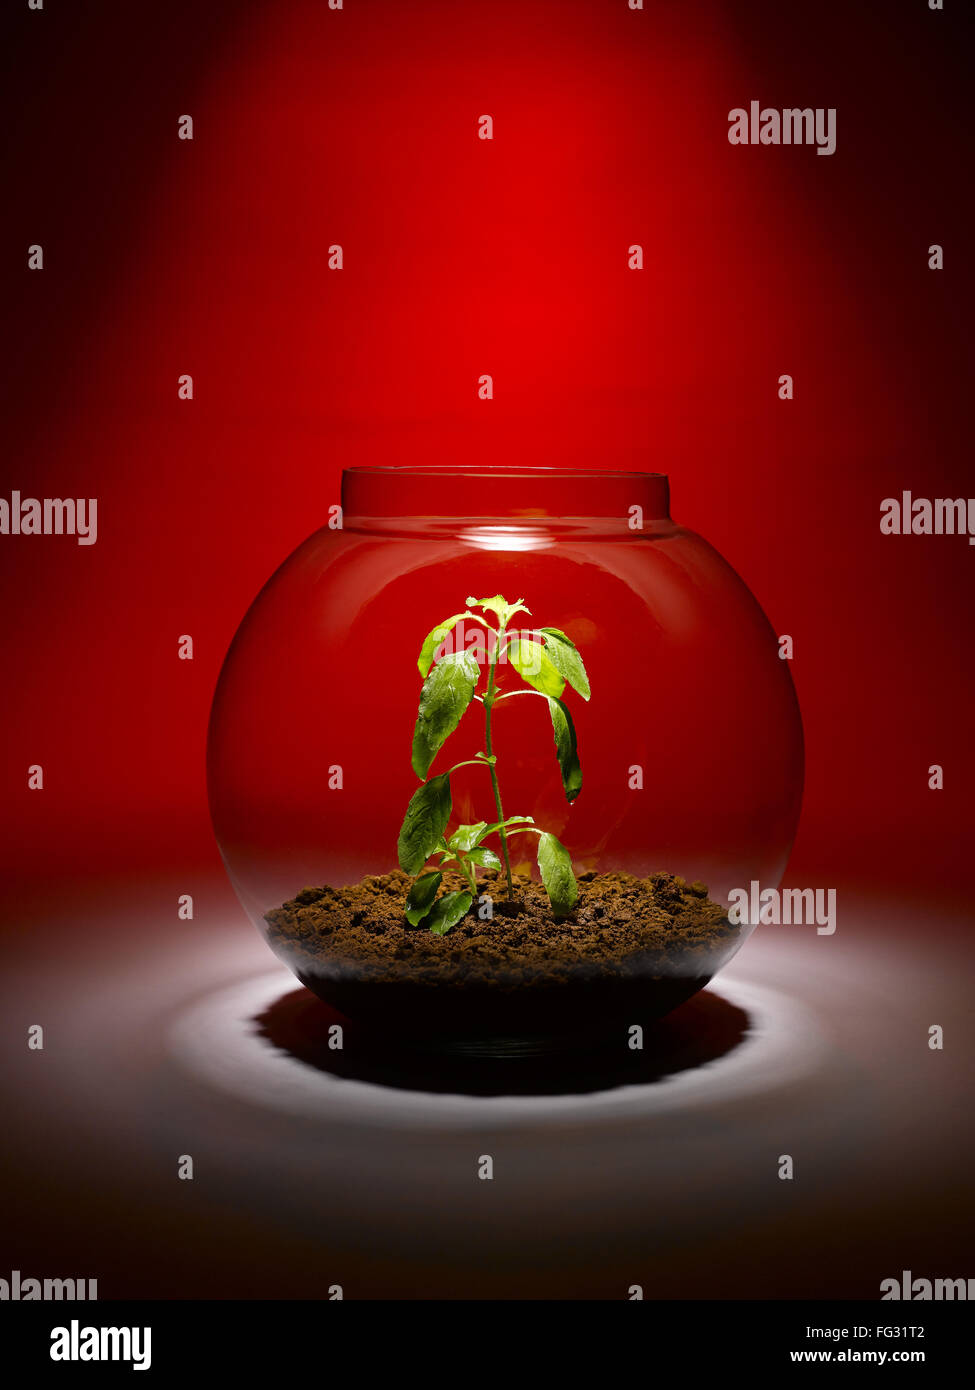 Tulsi plante poussant à l'intérieur d'un bol en verre, Inde Banque D'Images